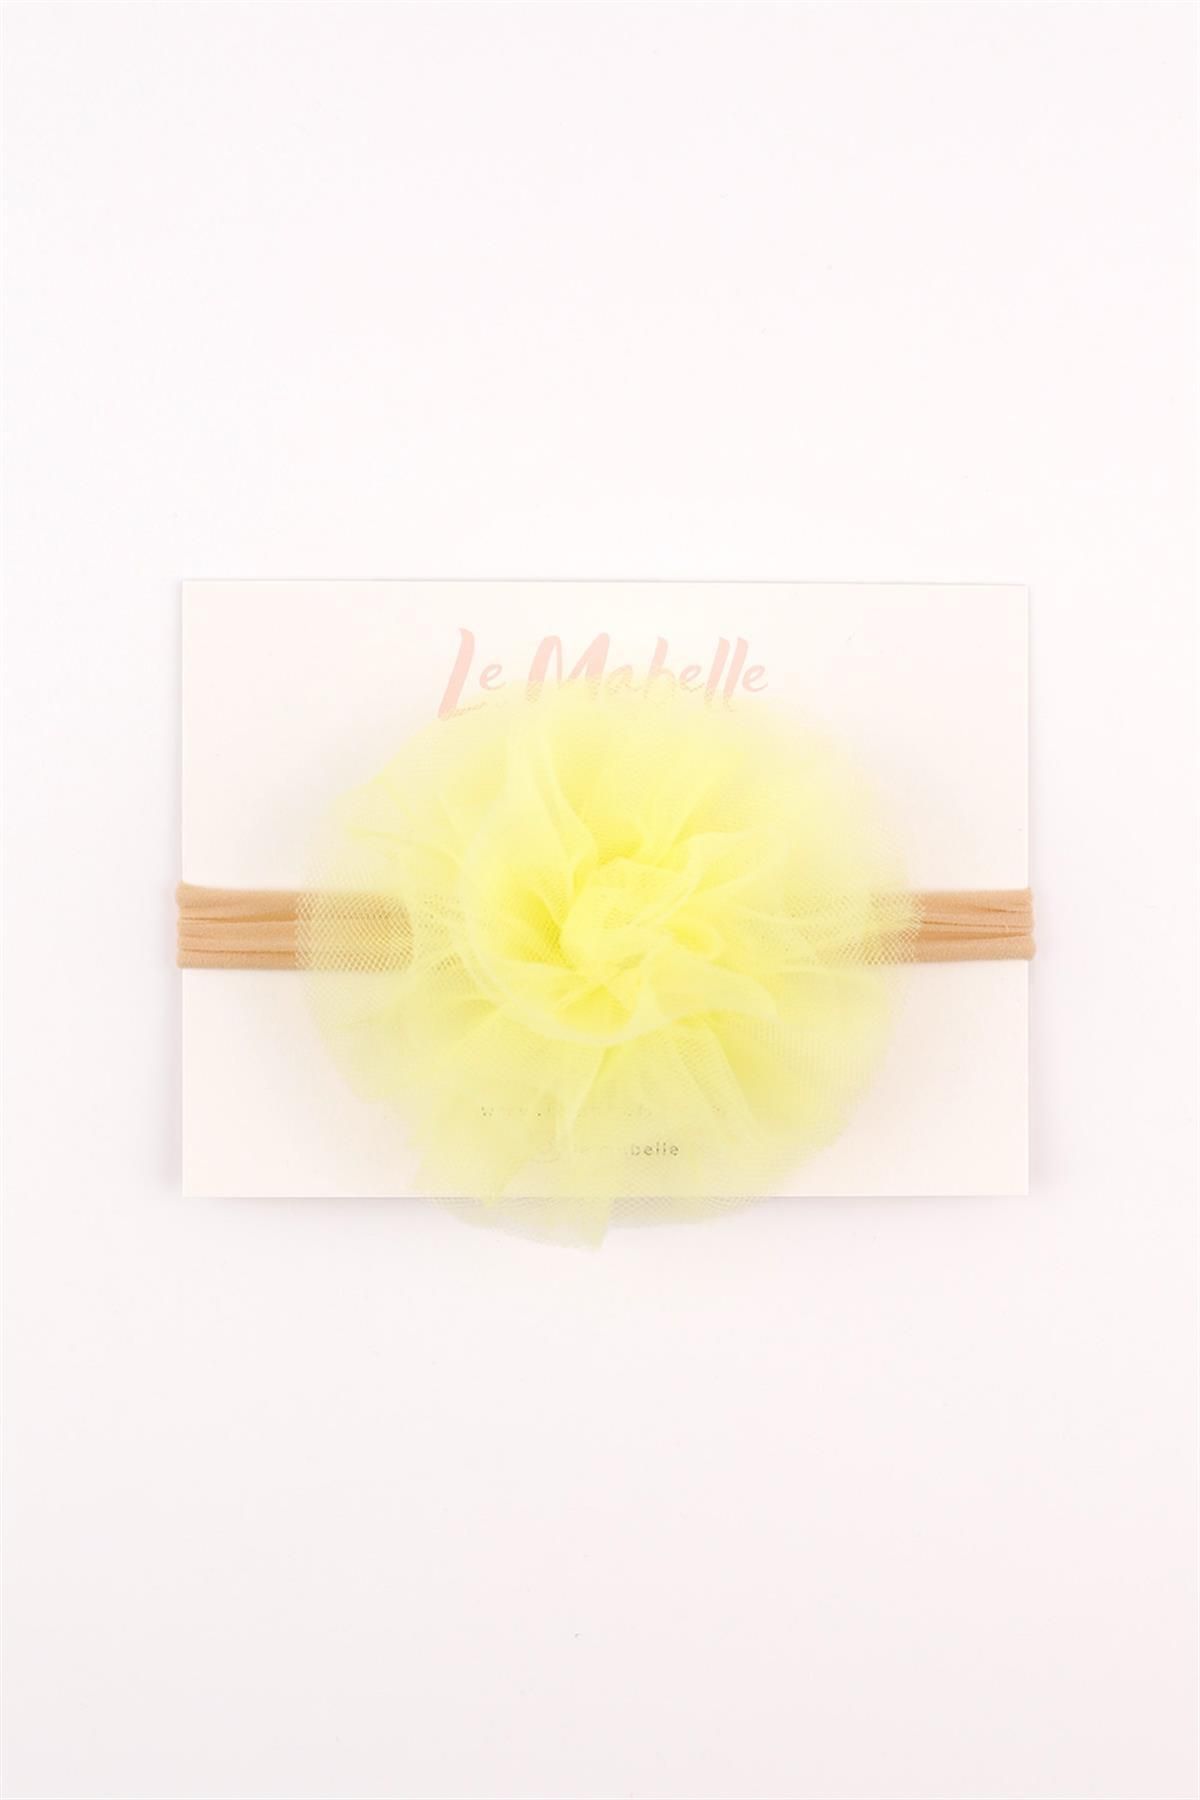 Le Mabelle Sarı Tül Çiçek Kız Çocuk Saç Bandı